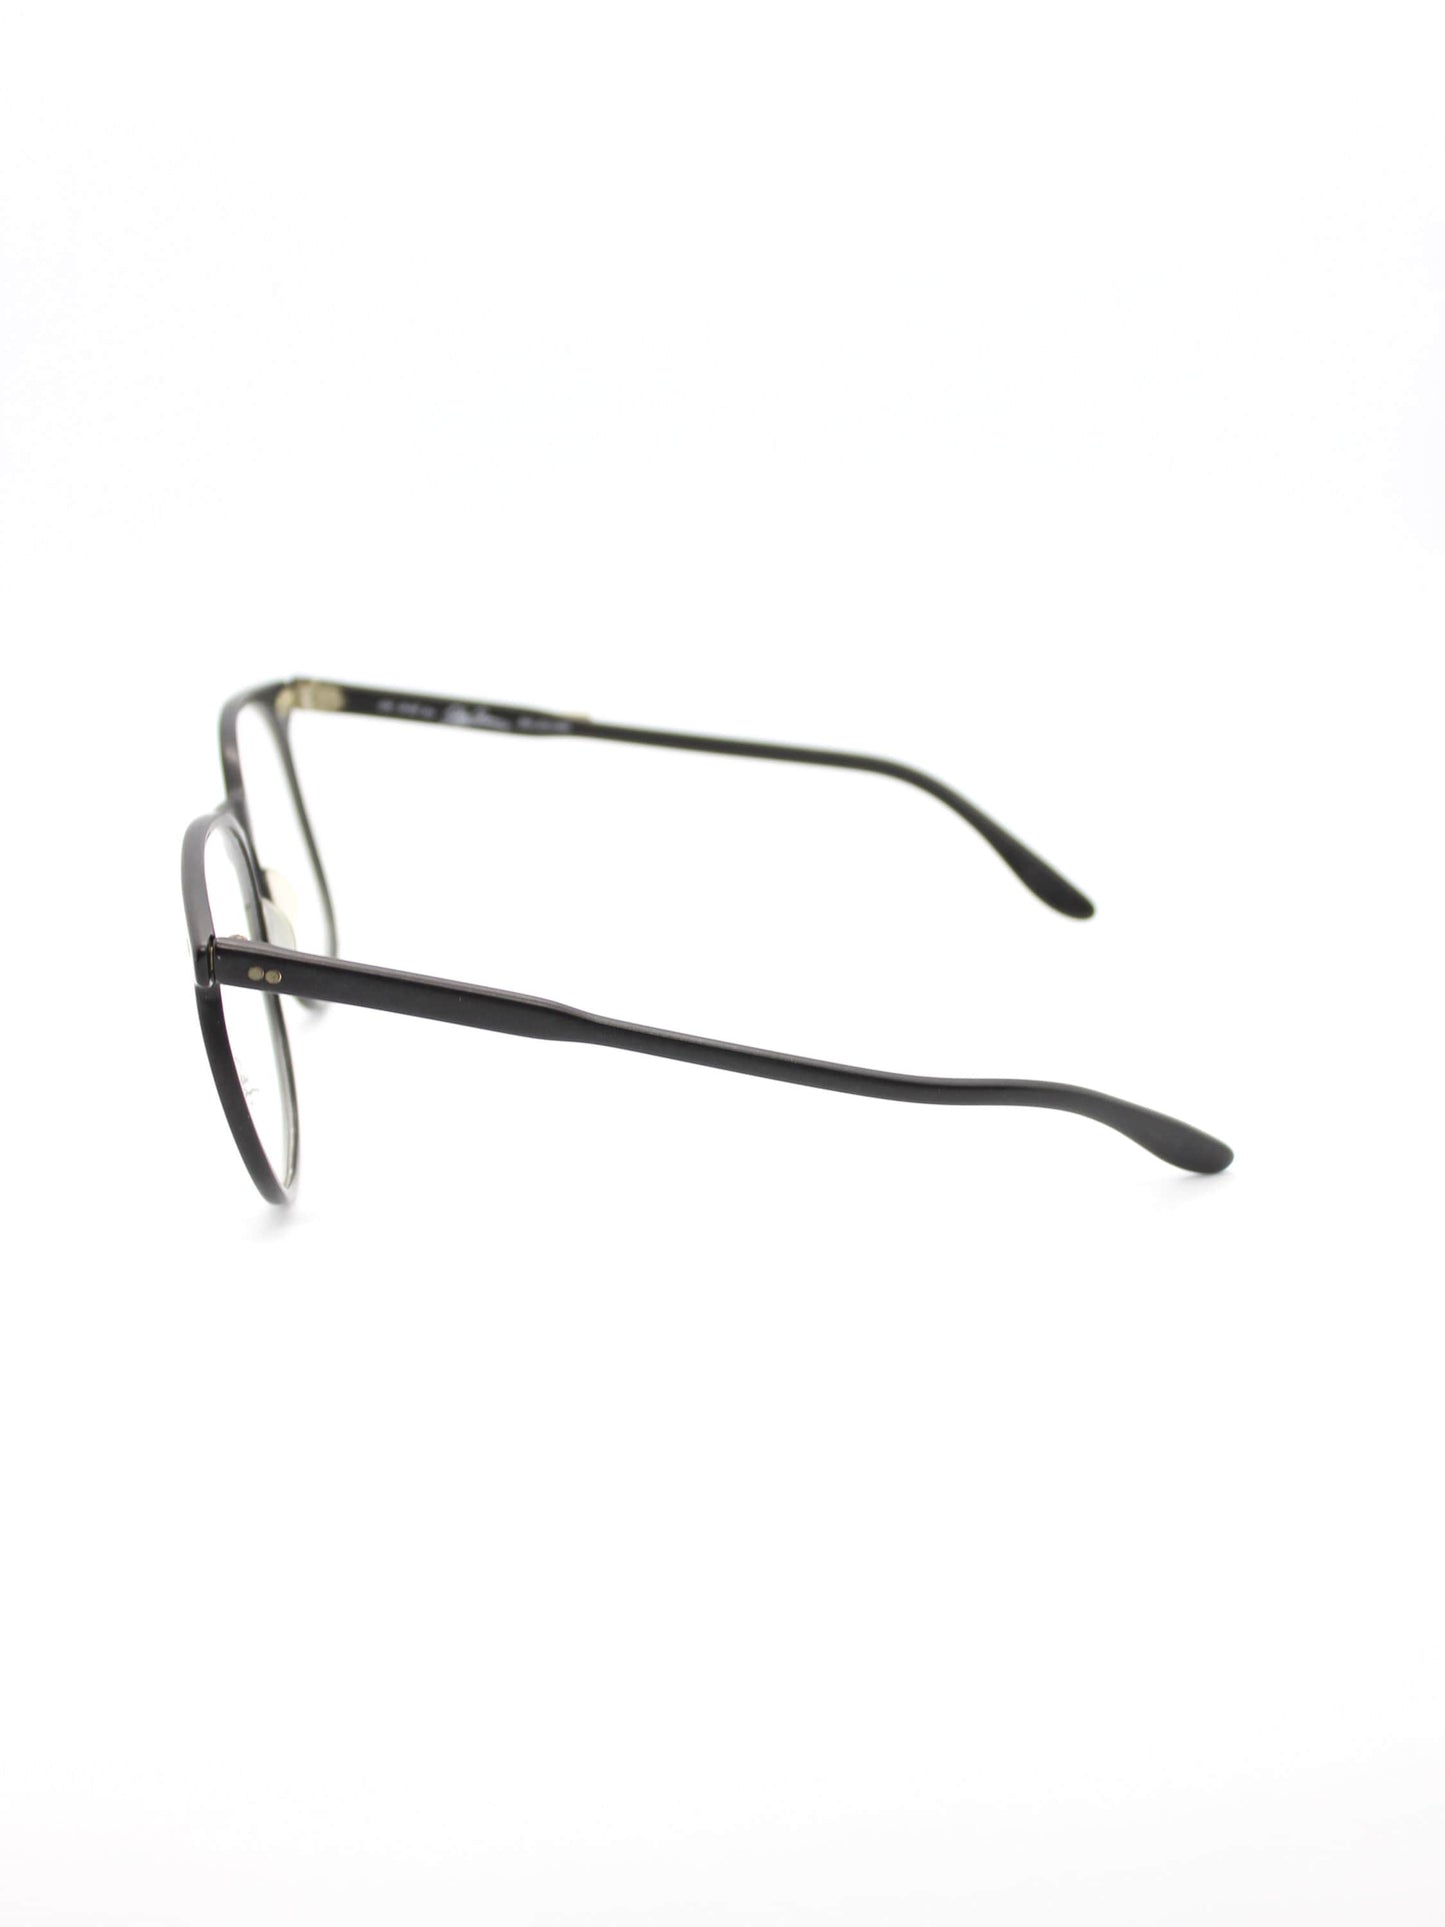 OLEG CASSINI Vintage New old stock Black Matte eyeglasses frames